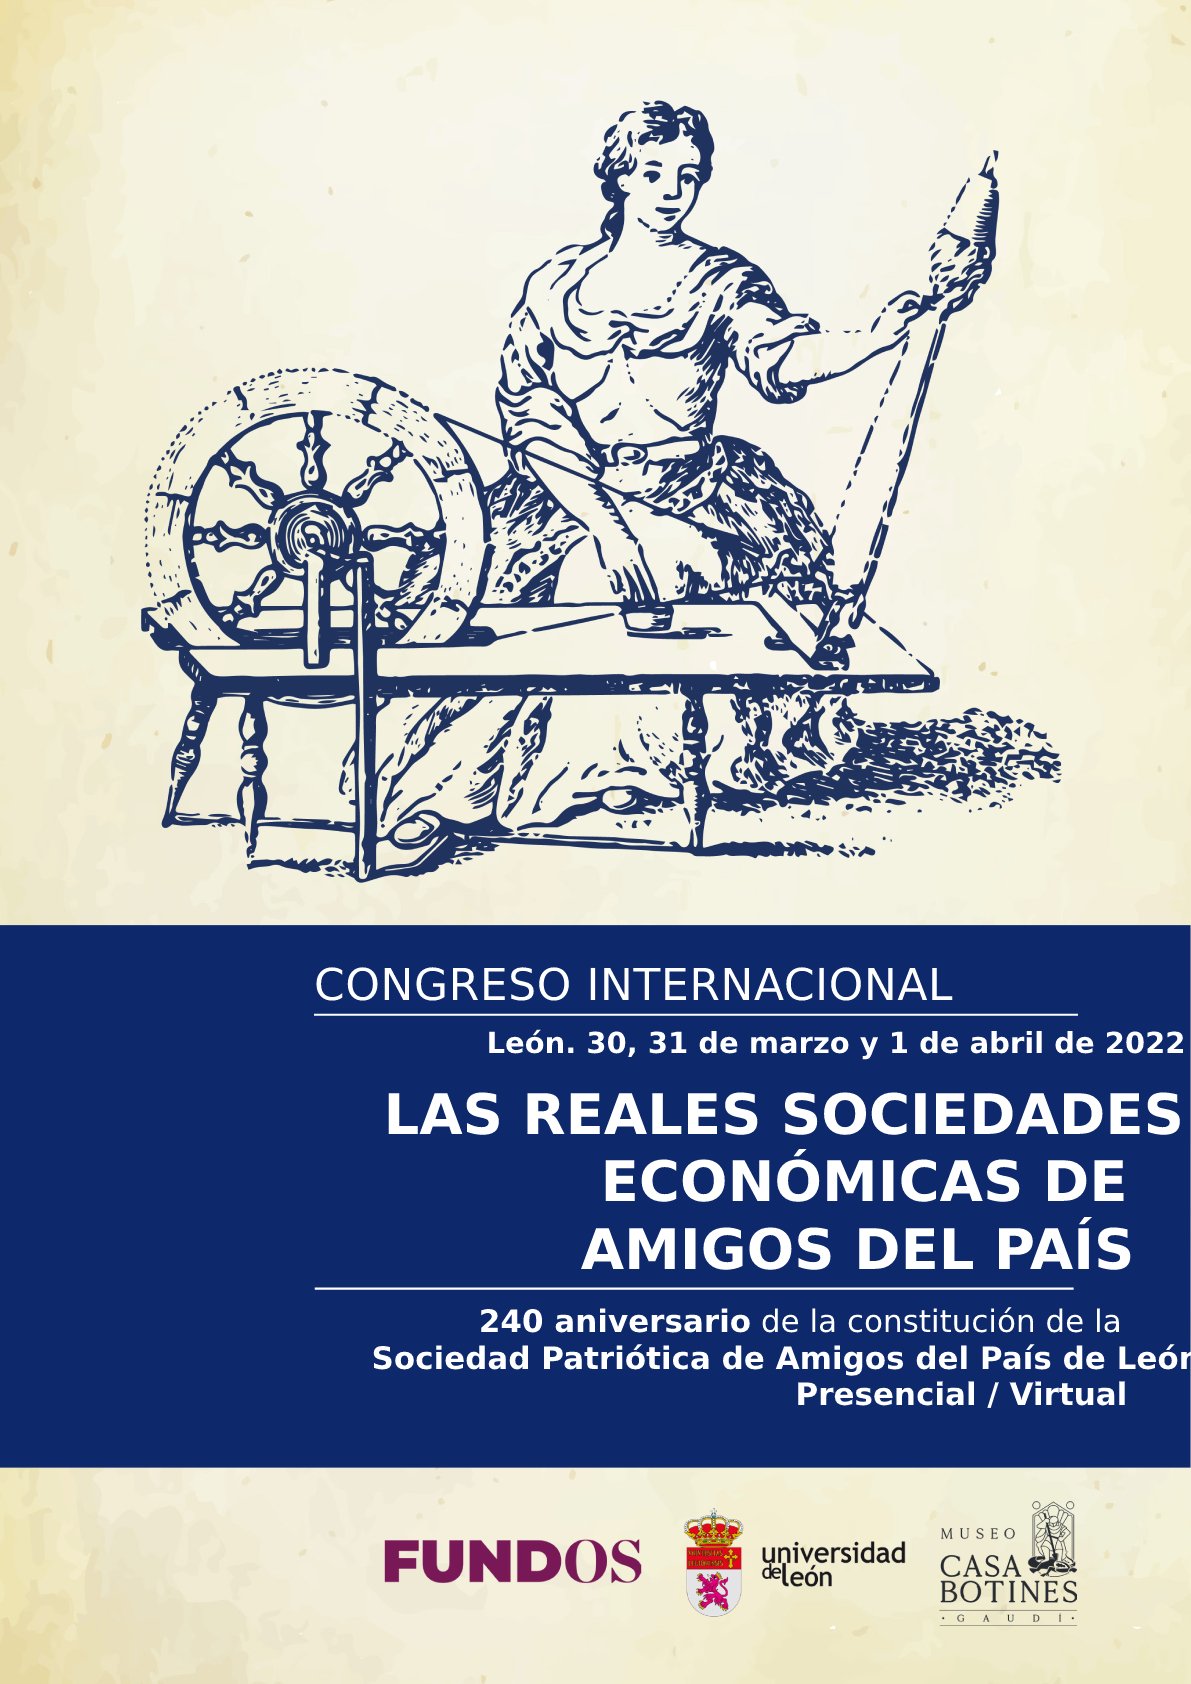 'Las Reales Sociedades Económicas de Amigos del País. 240 aniversario de constitución de la Sociedad Patriótica de Amigos del País de León'